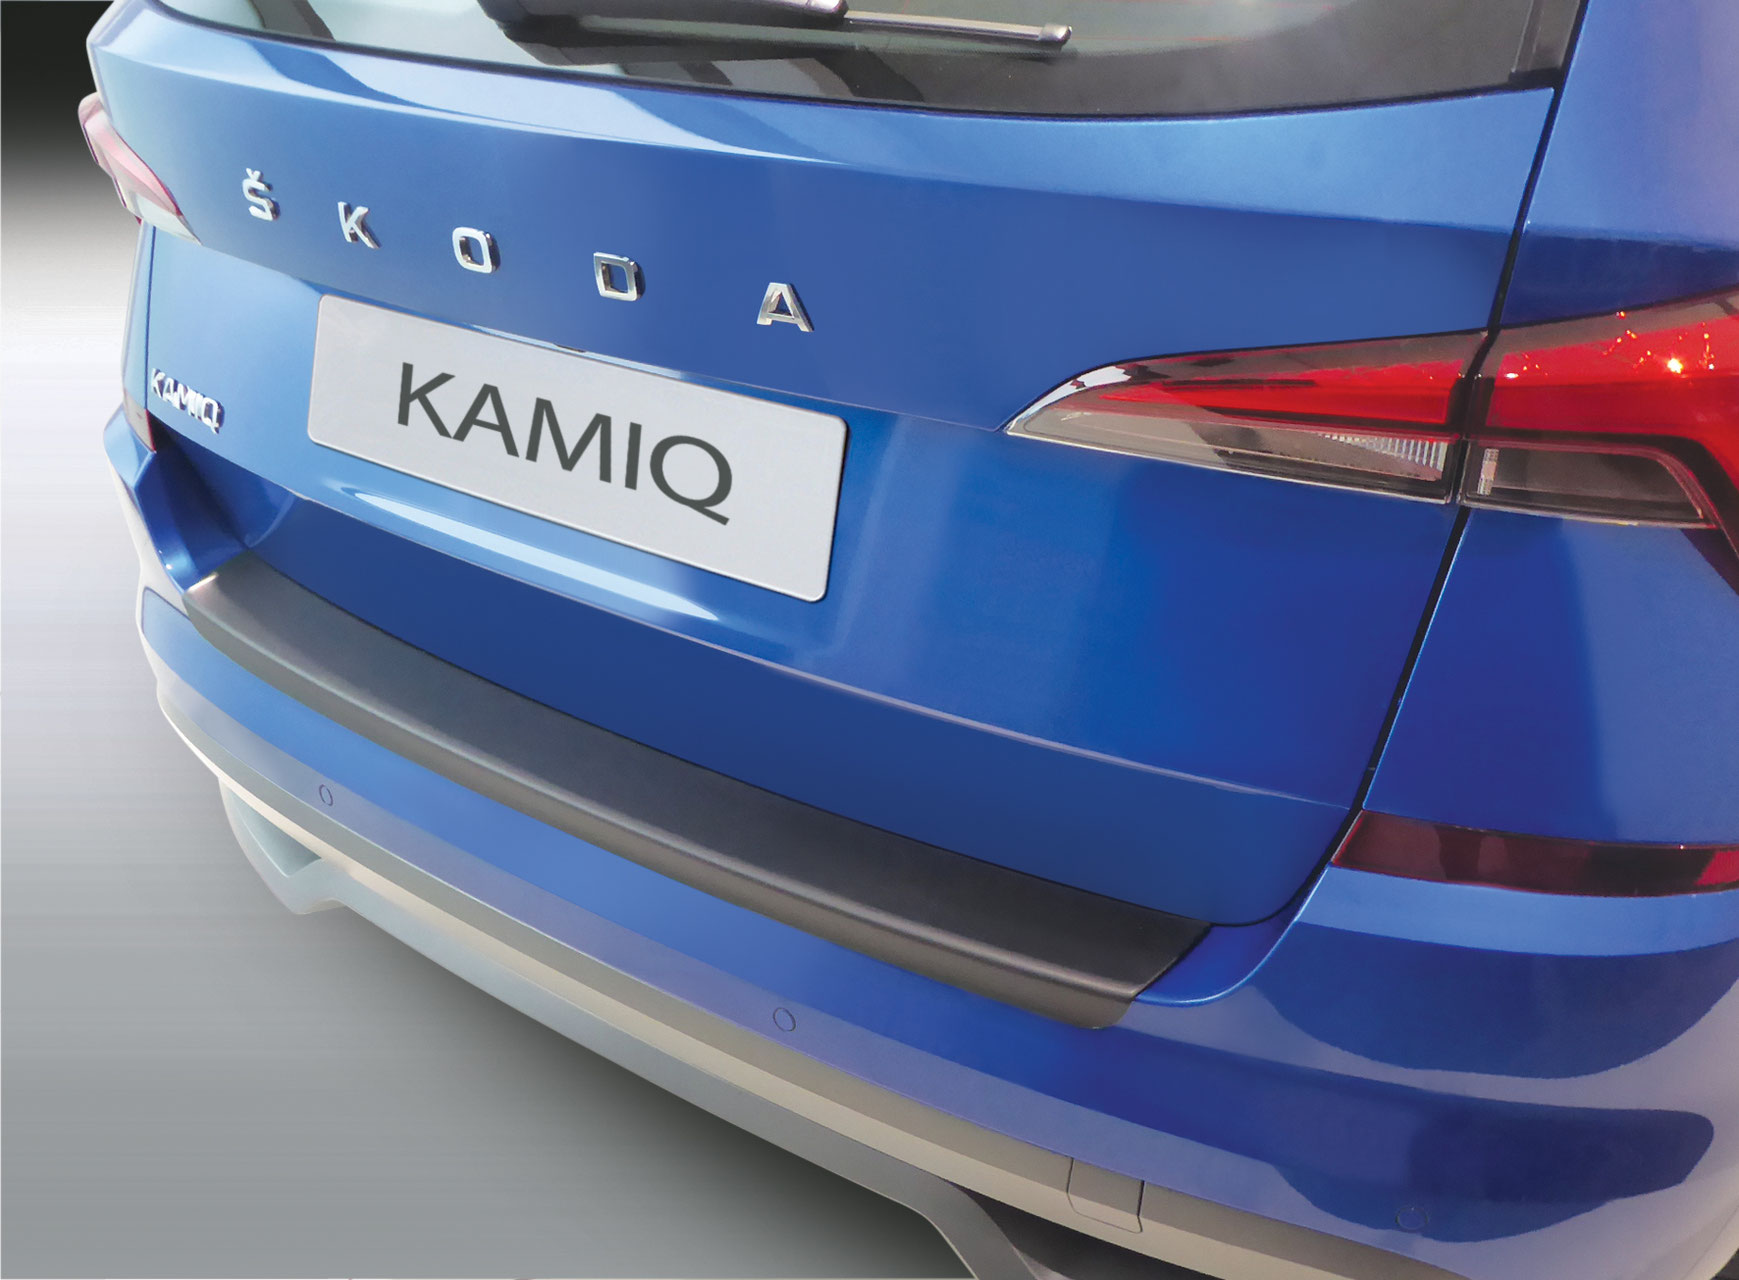 Ladekantenschutz für SKODA KAMIQ - Schutz für die Ladekante Ihres Fahrzeuges